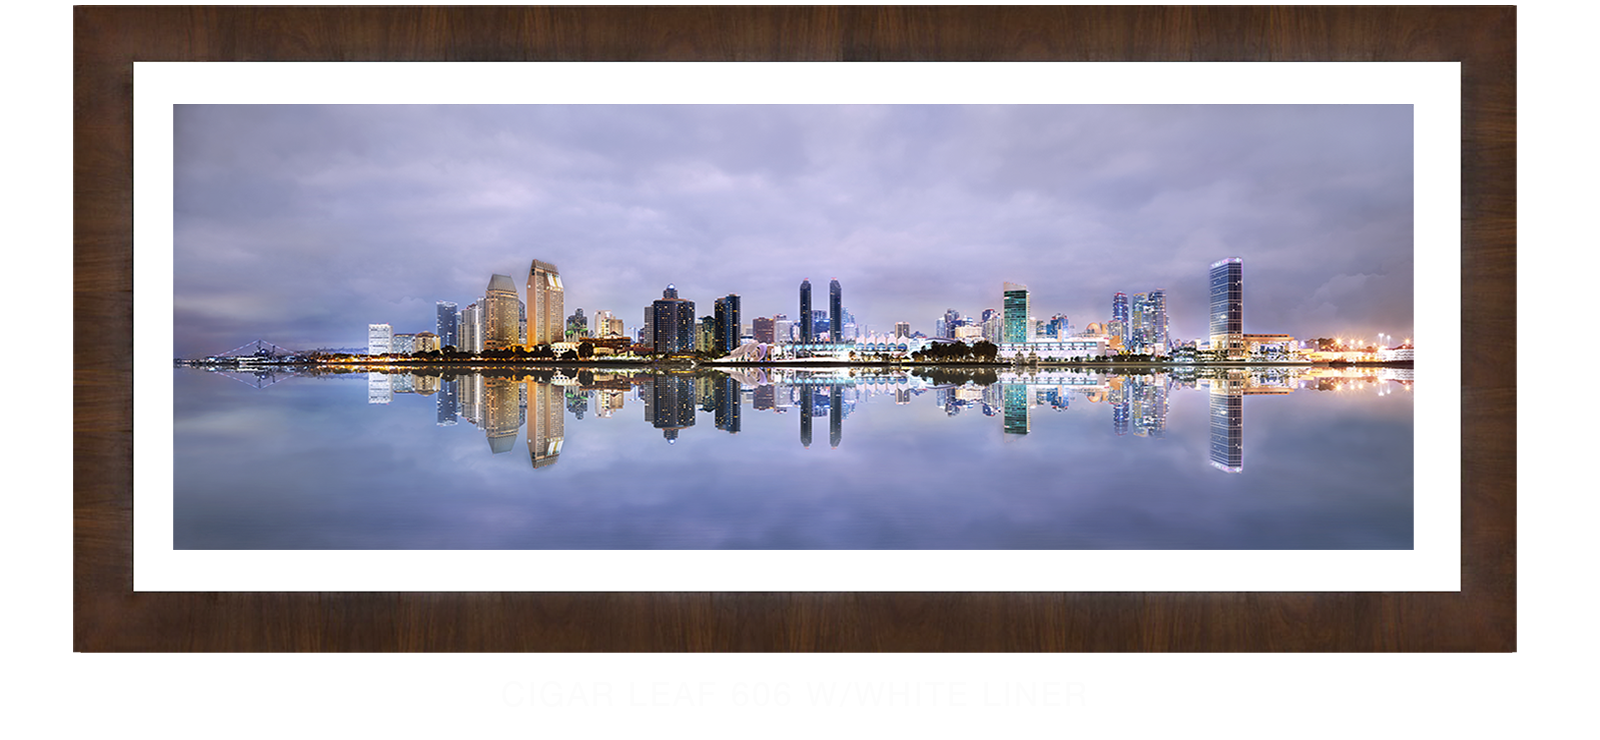 21INTERLUDE DIEGO Cigar Leaf 606 w_Wht Liner T